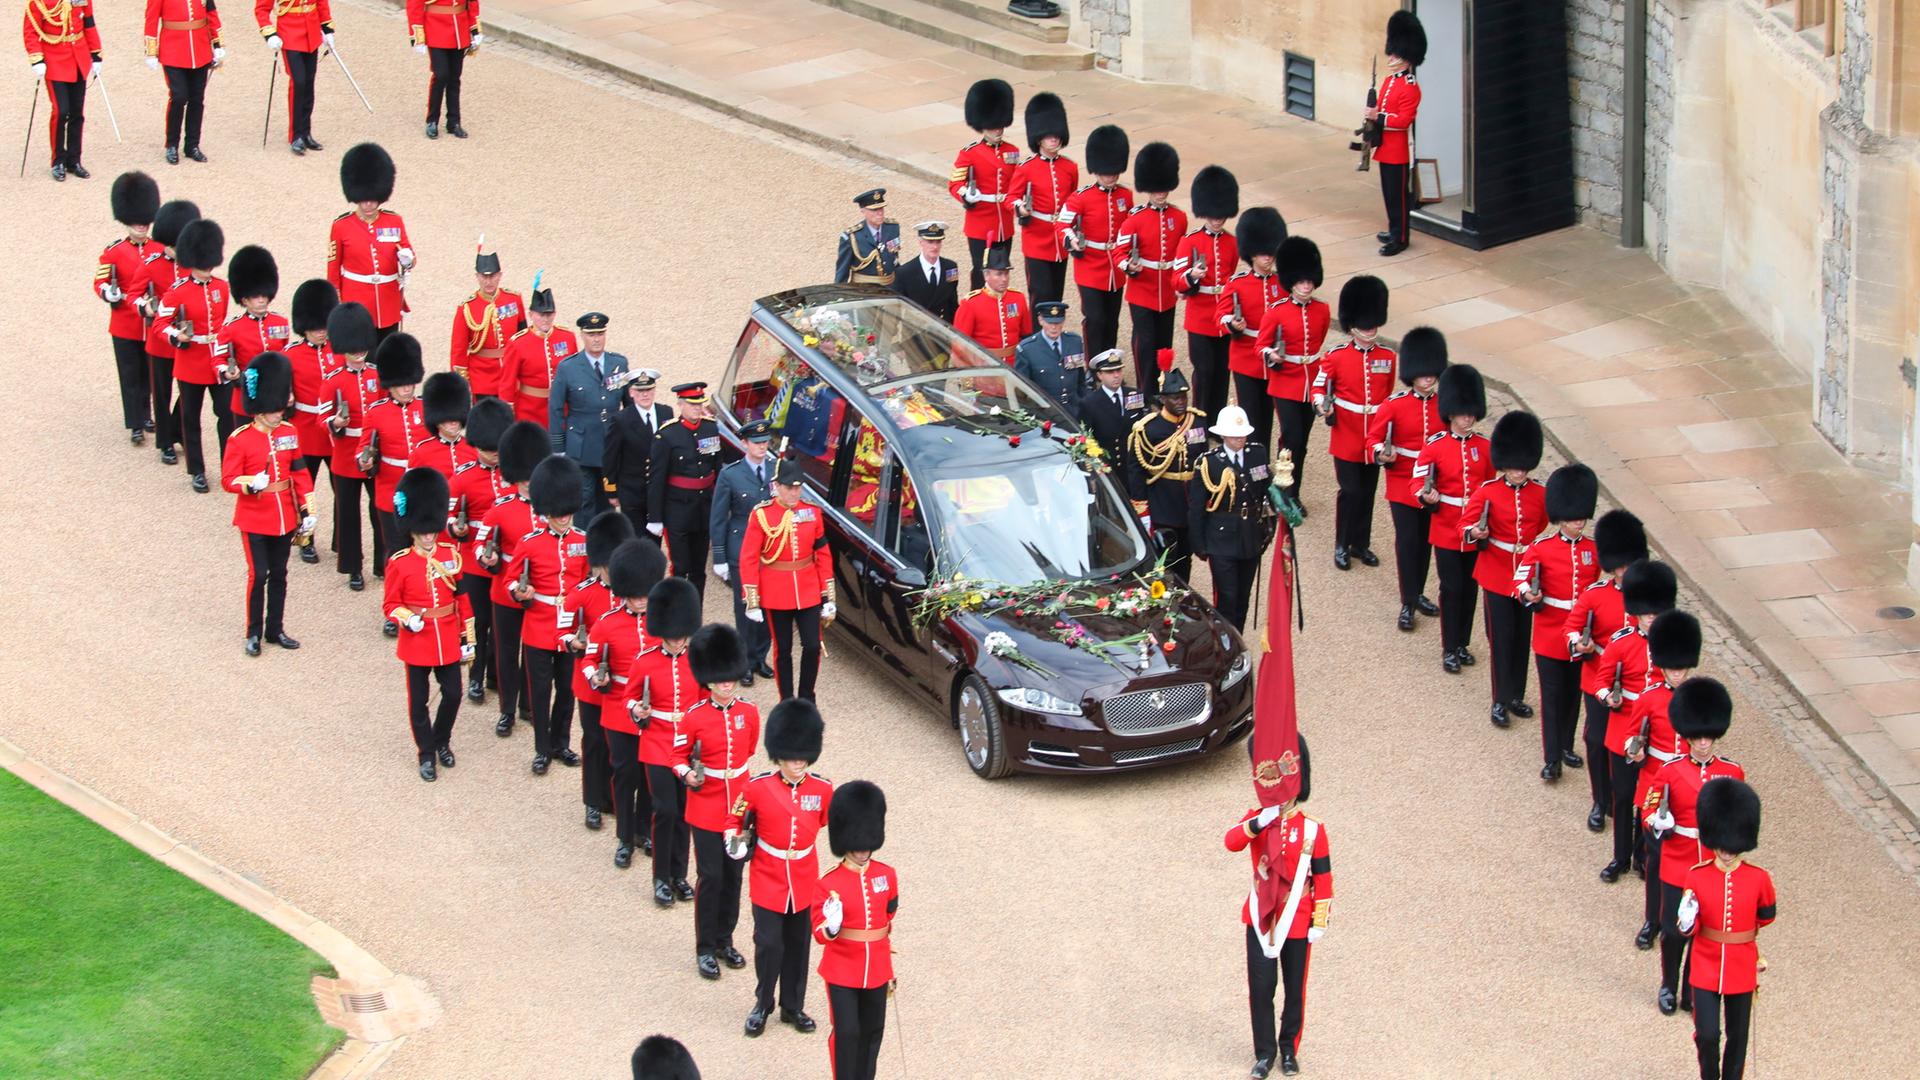 Der Sarg mit Königin Elizabeth II. in einem Leichenwagen auf Schloss Windsor